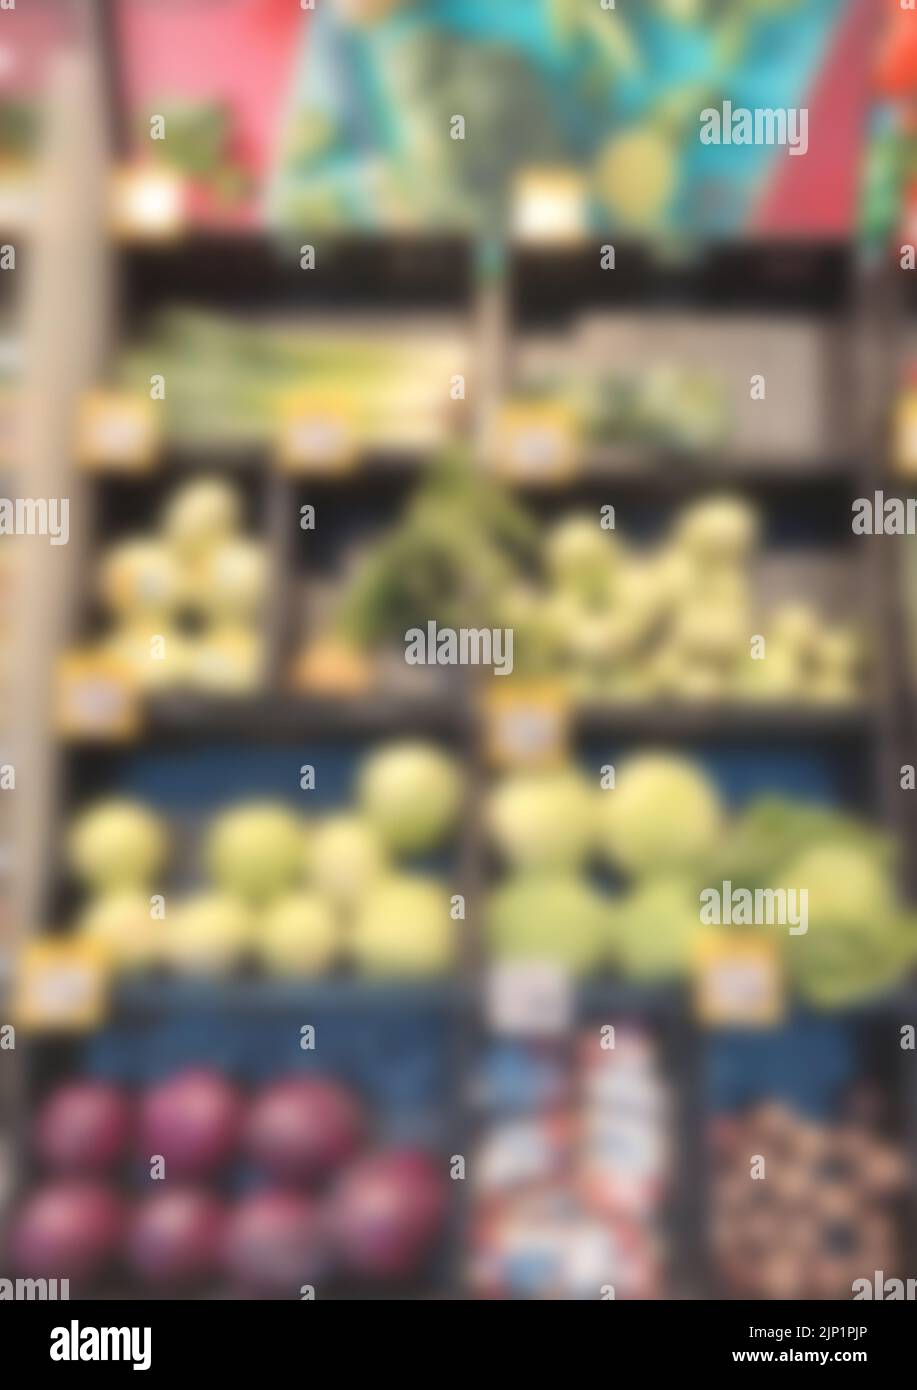 blurry background image of supermarket Stock Photo